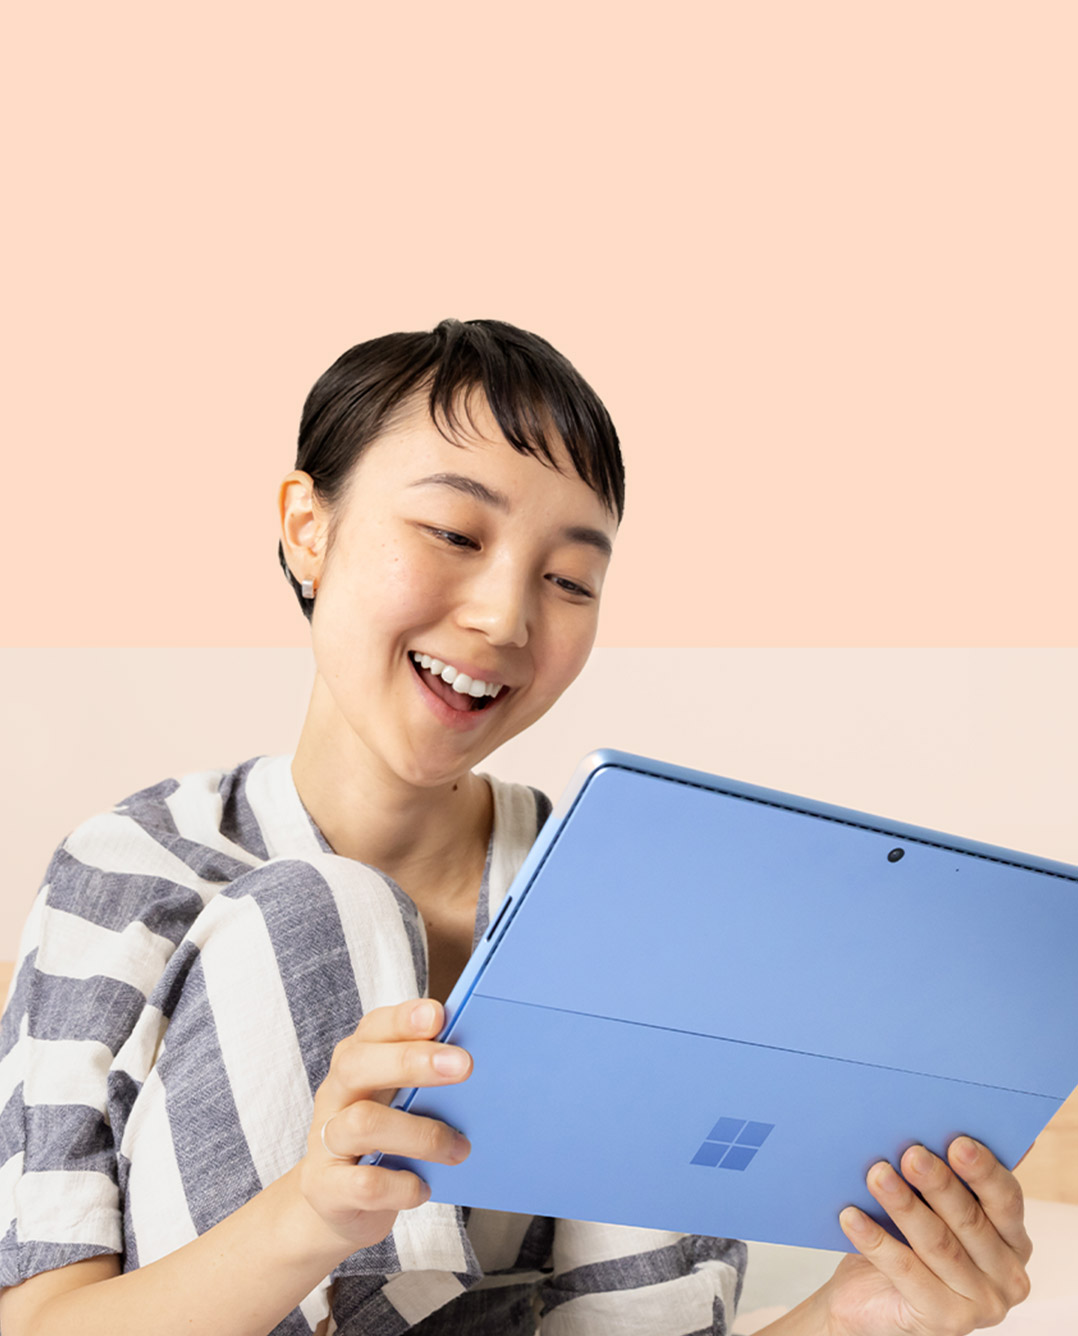 ผู้หญิงคนหนึ่งยิ้มให้กับ Surface Pro 9 สีแซฟไฟร์ขณะถือ Surface Slim Pen 2